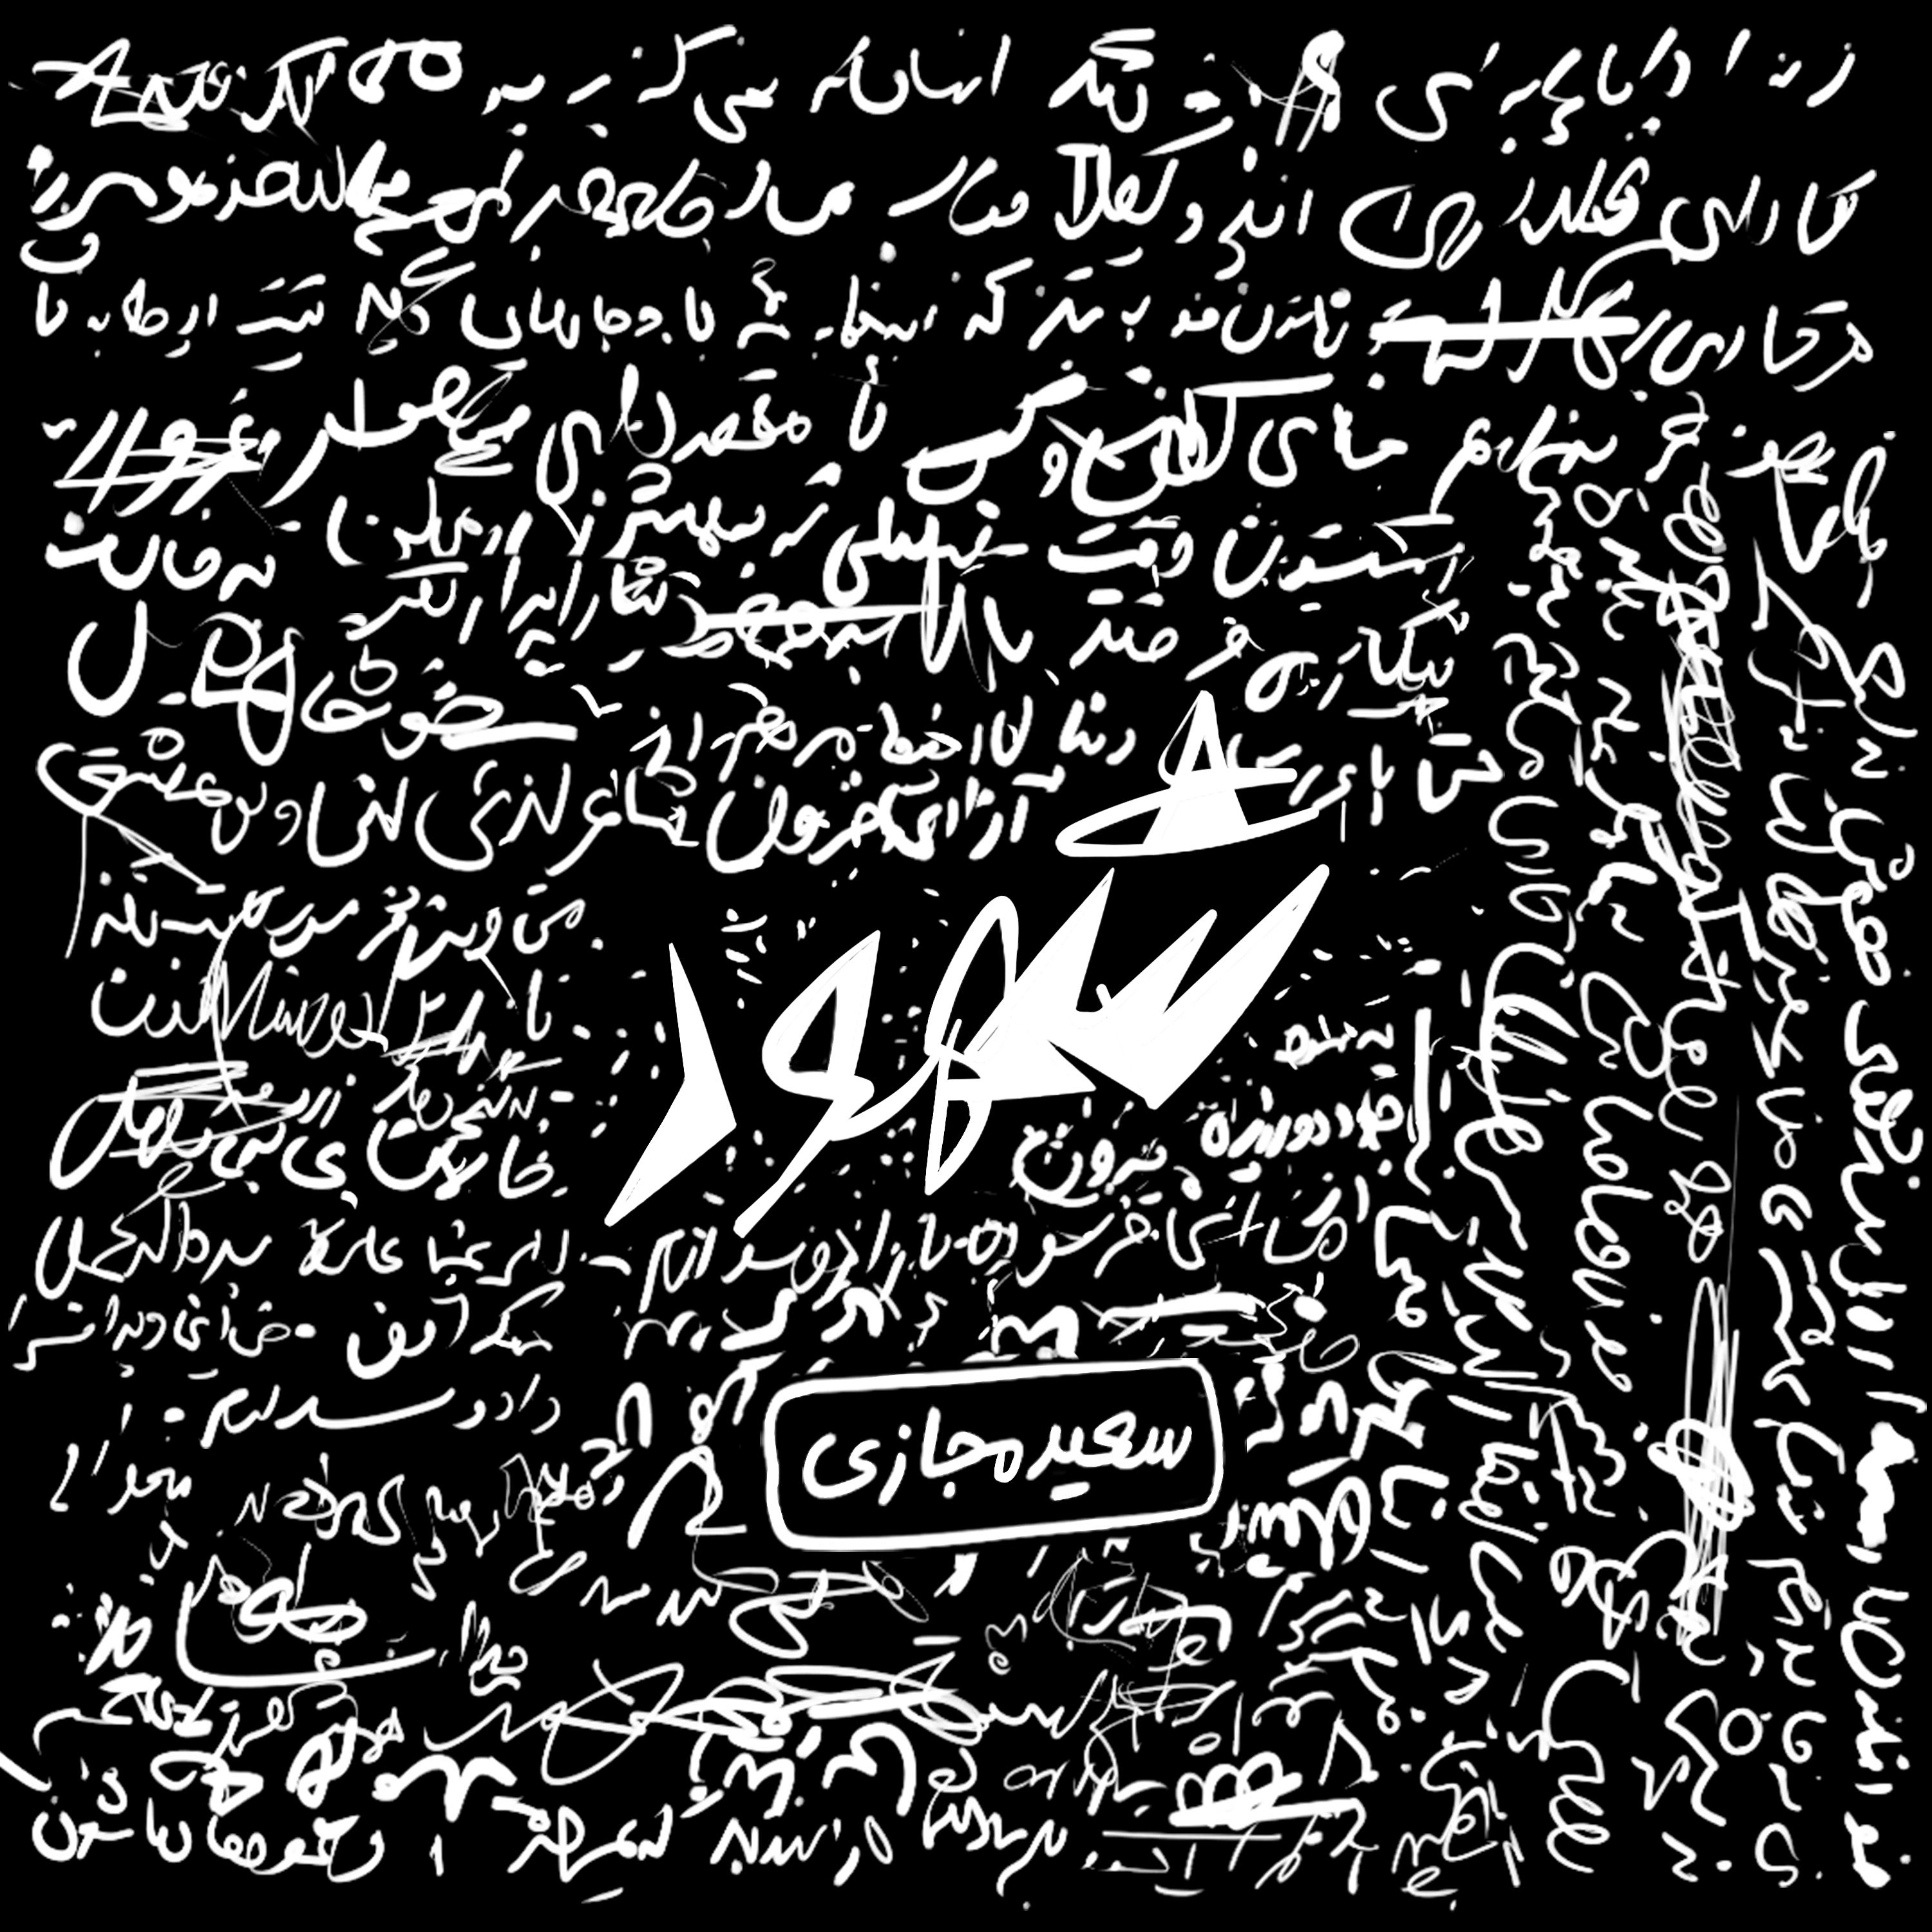  دانلود آهنگ جدید سعید مجازی - تابو | Download New Music By SaeeD Majazi - Taboo